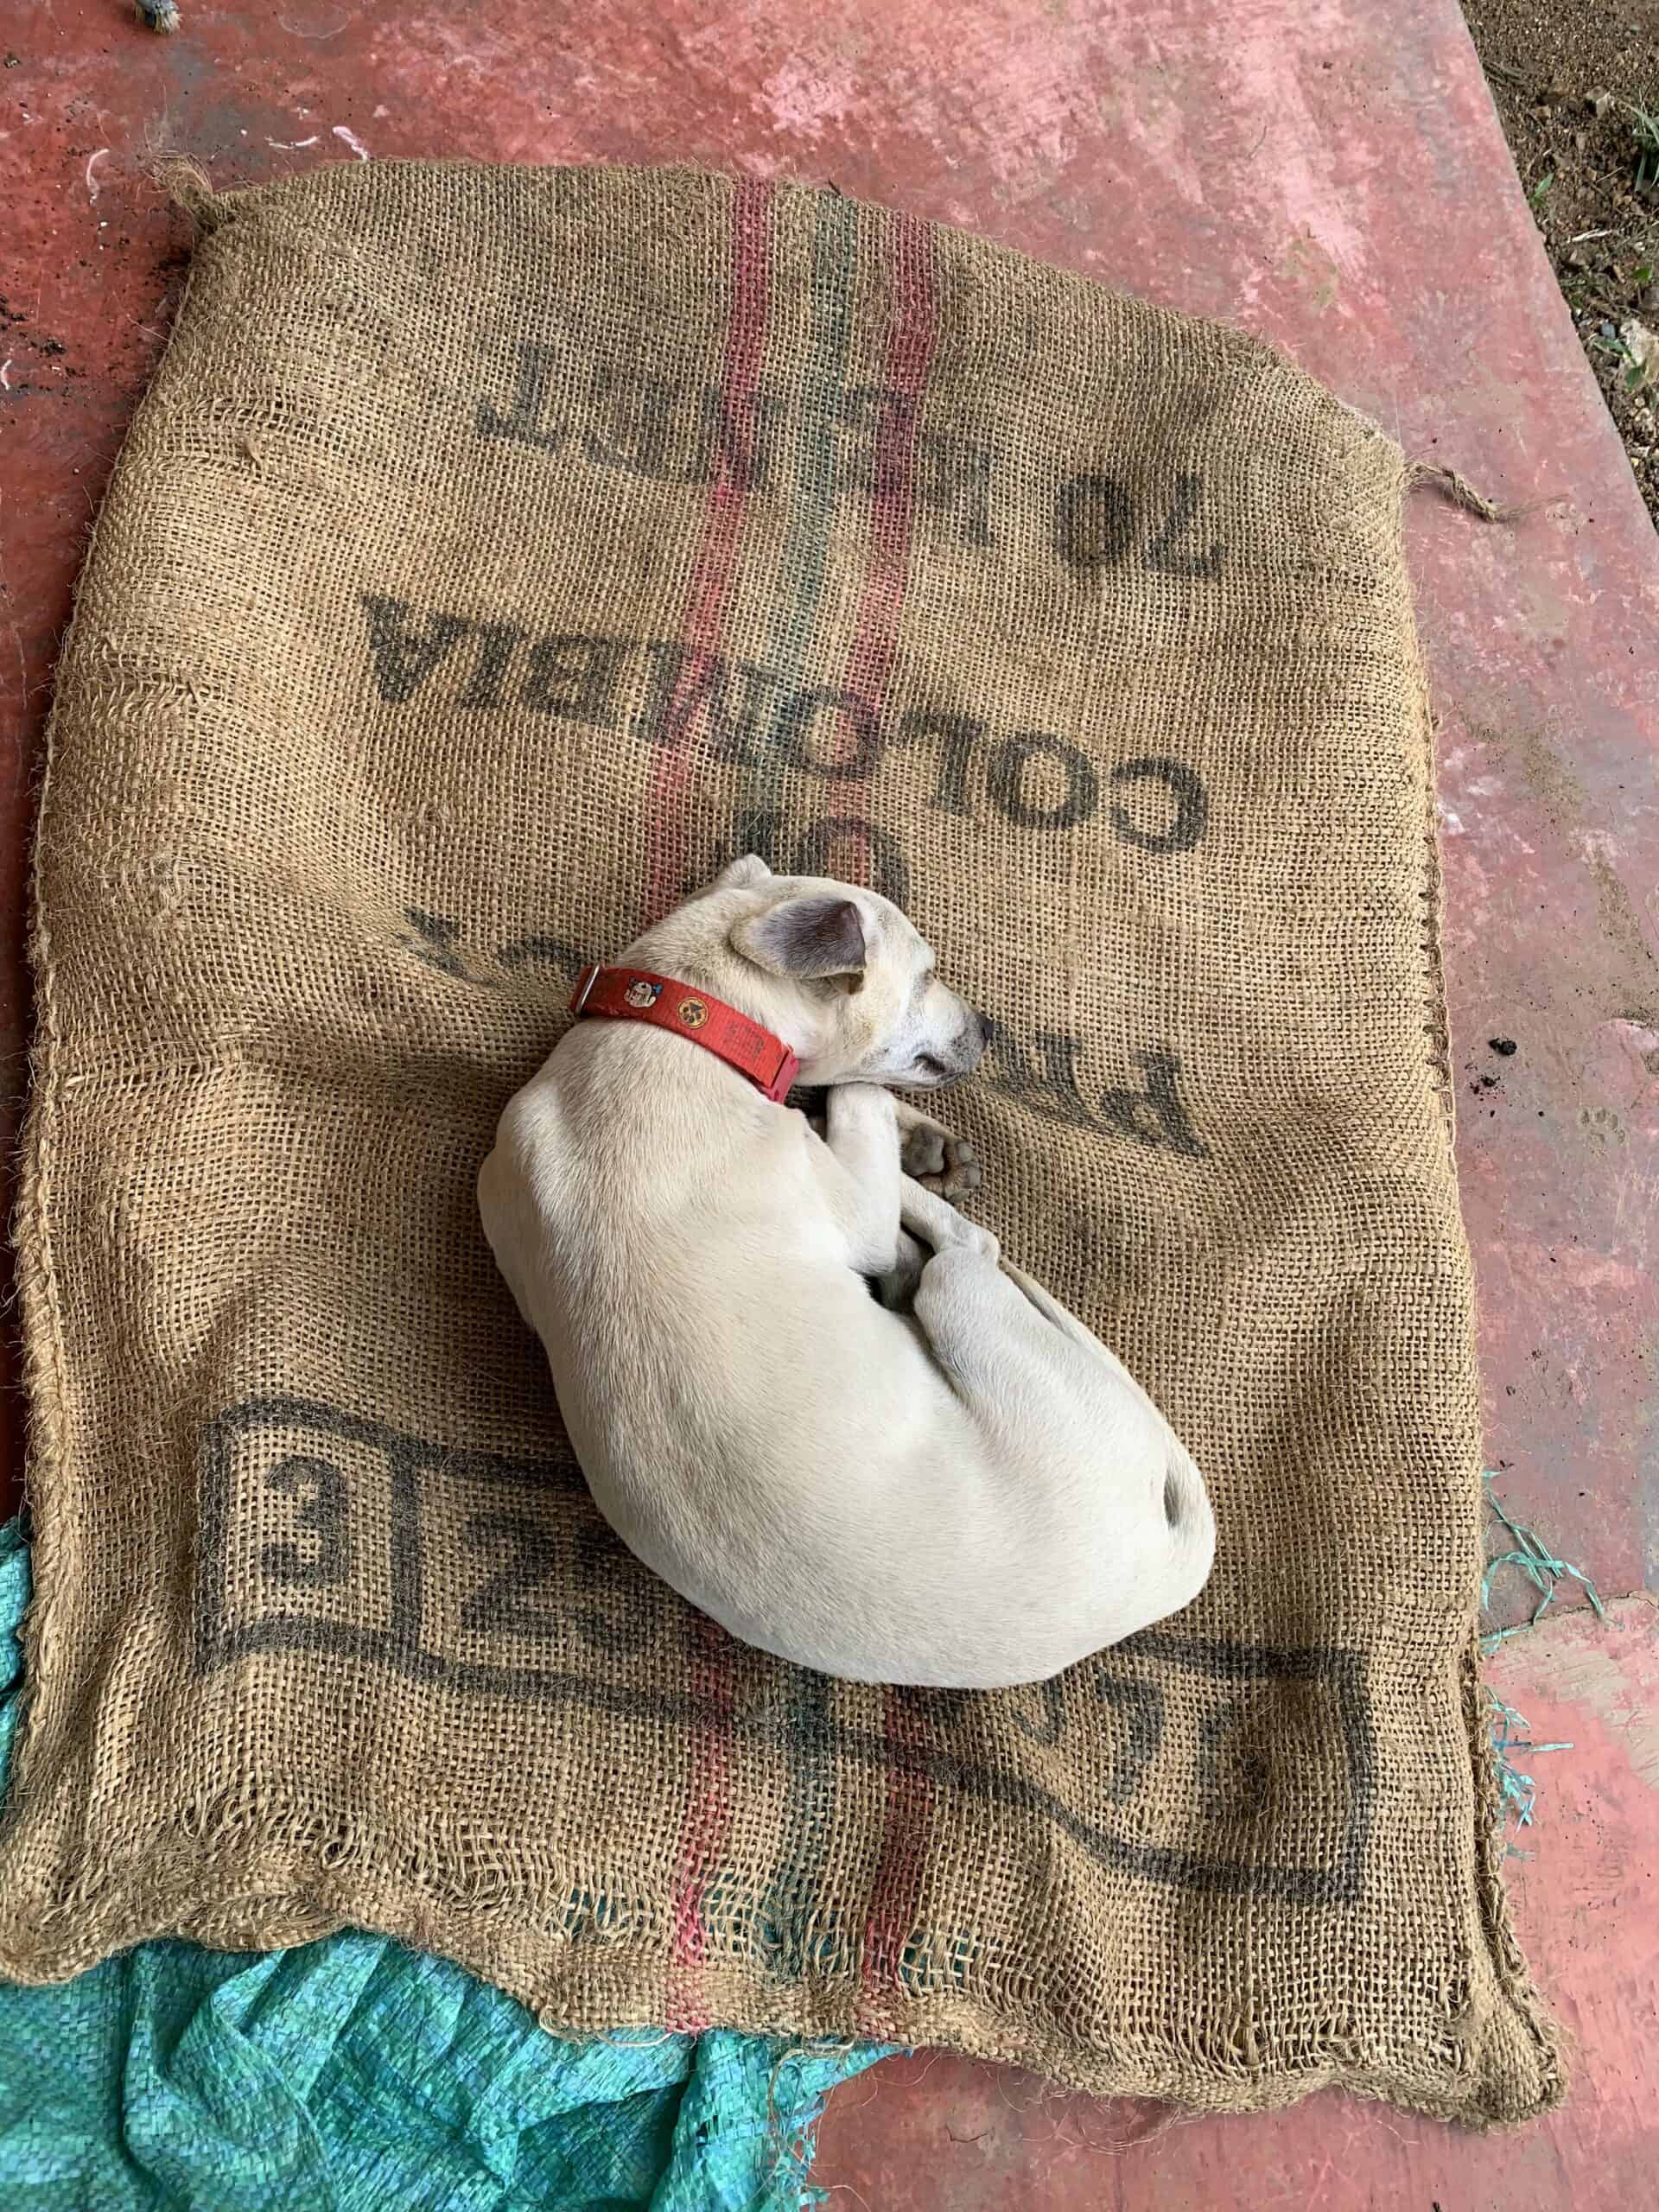 El fiel compañero de la Finca La Divisa descansando en un costal de café